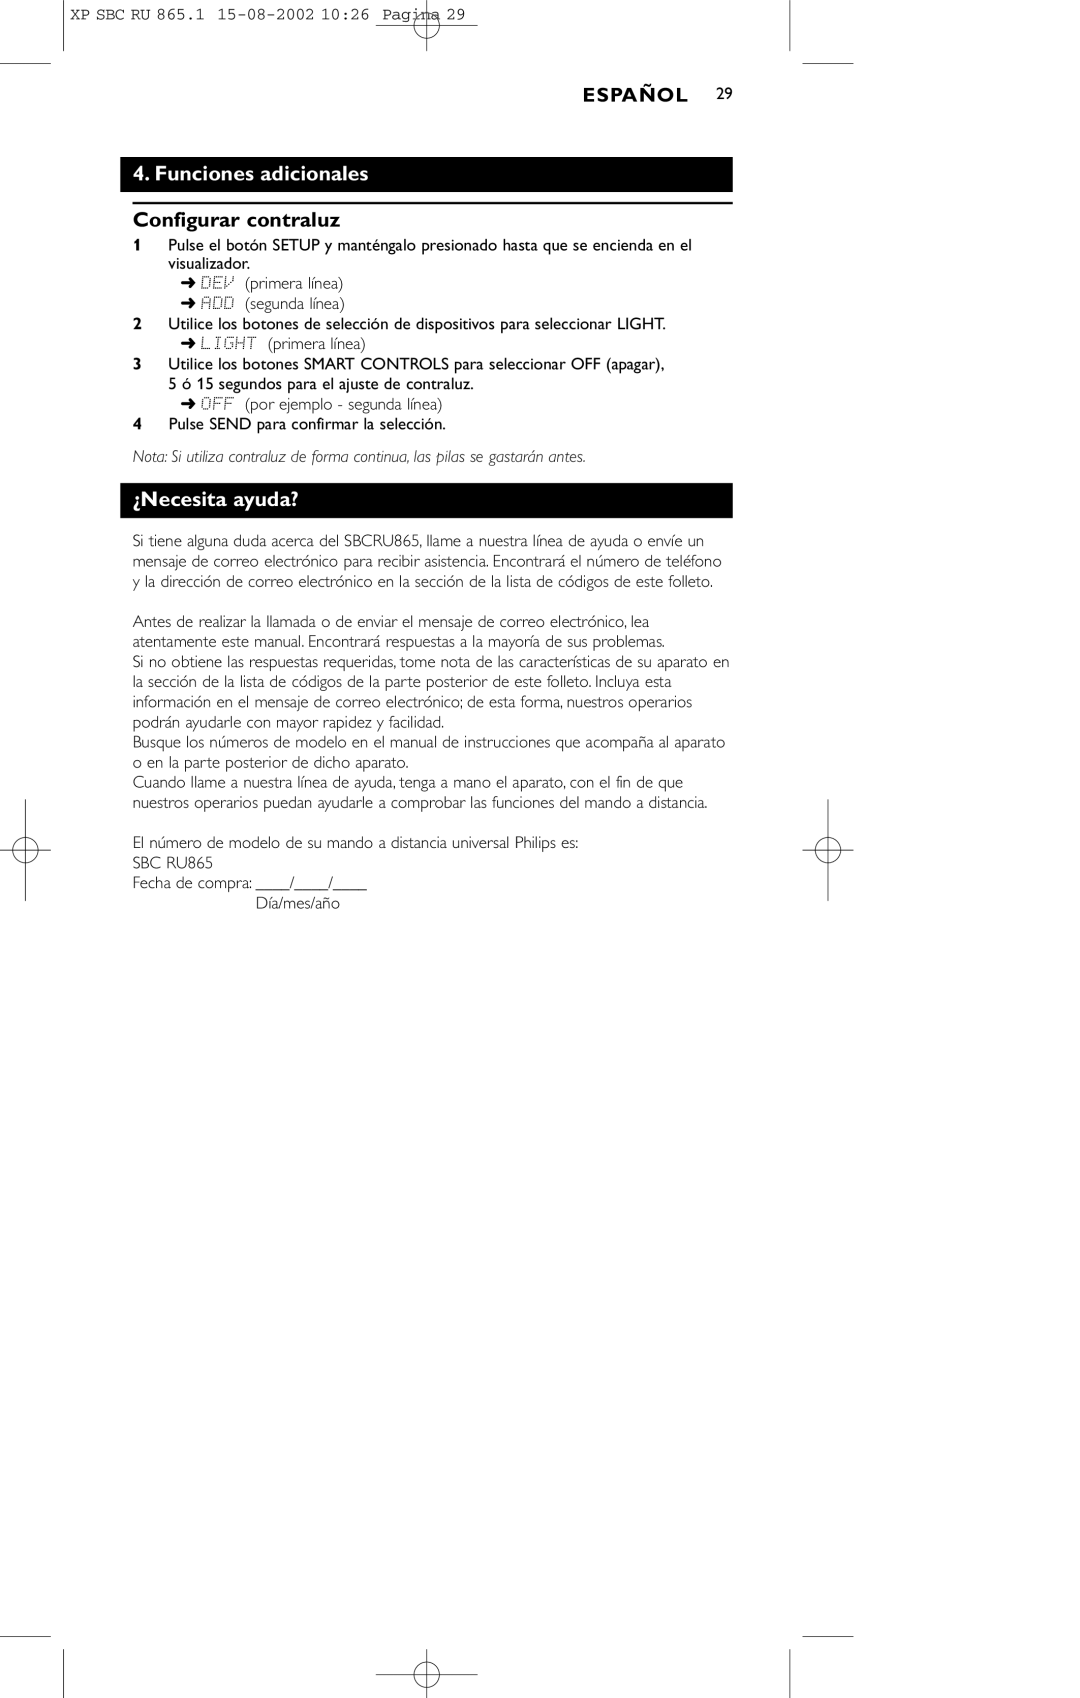 Philips SBC RU 865/00 manual Funciones adicionales, Configurar contraluz, ¿Necesita ayuda? 